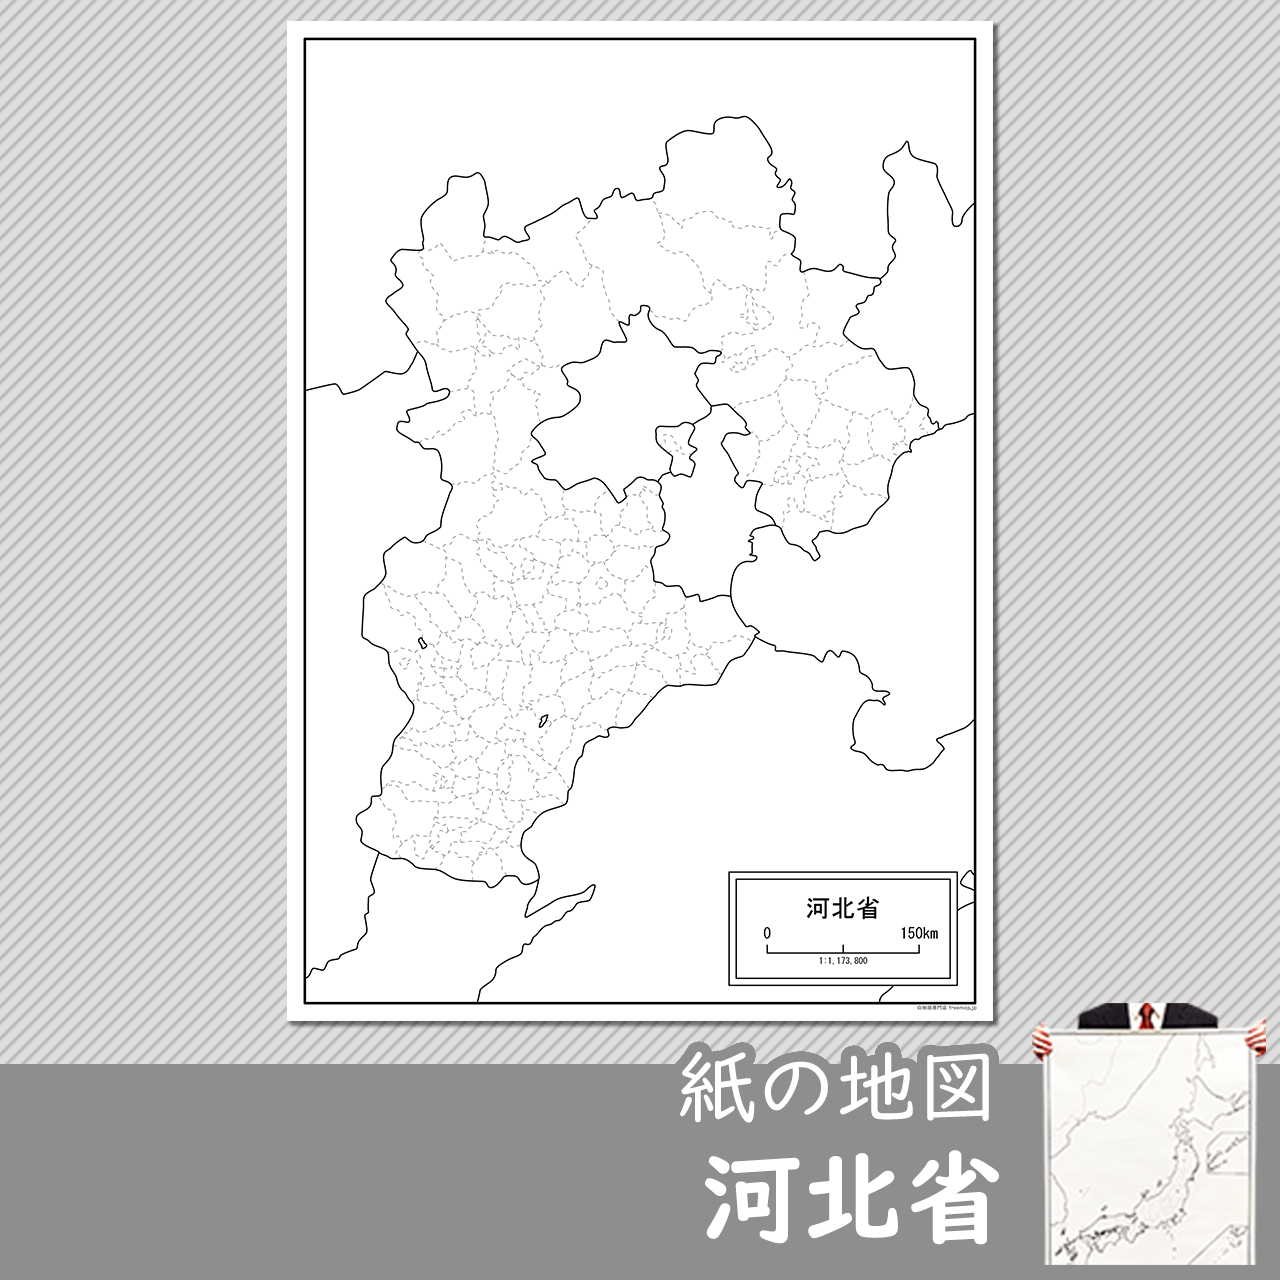 河北省（かほくしょう）の紙の白地図のサムネイル